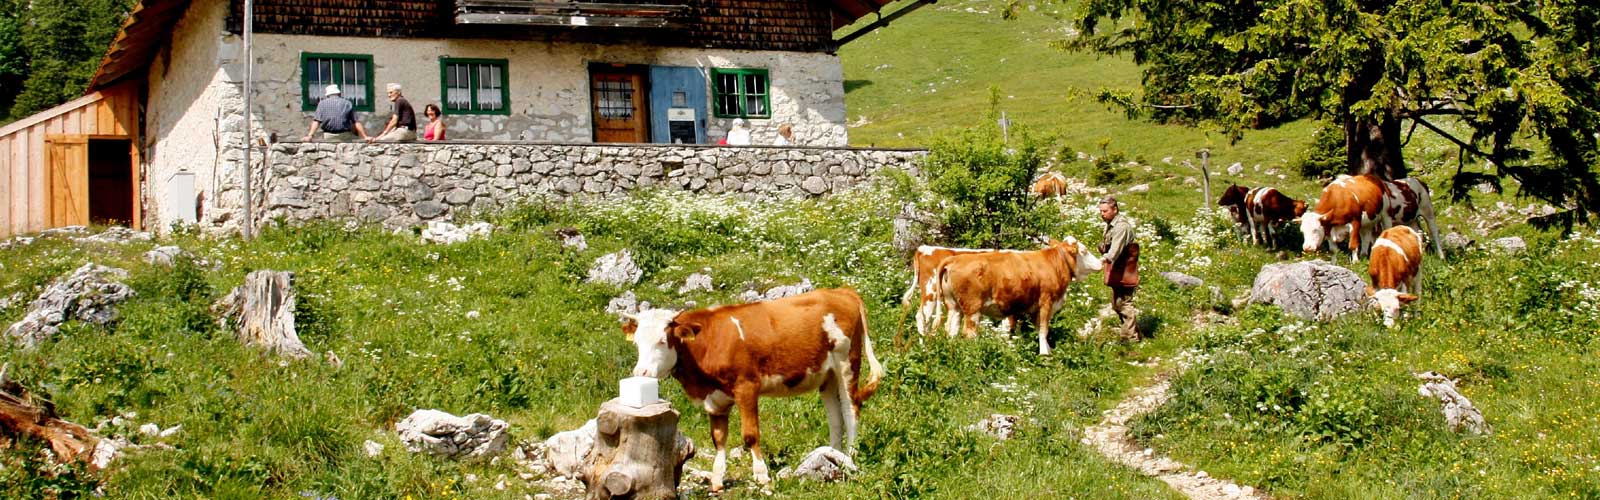 Casa Salesai Carano Vacanze in Val di Fiemme in Trentino